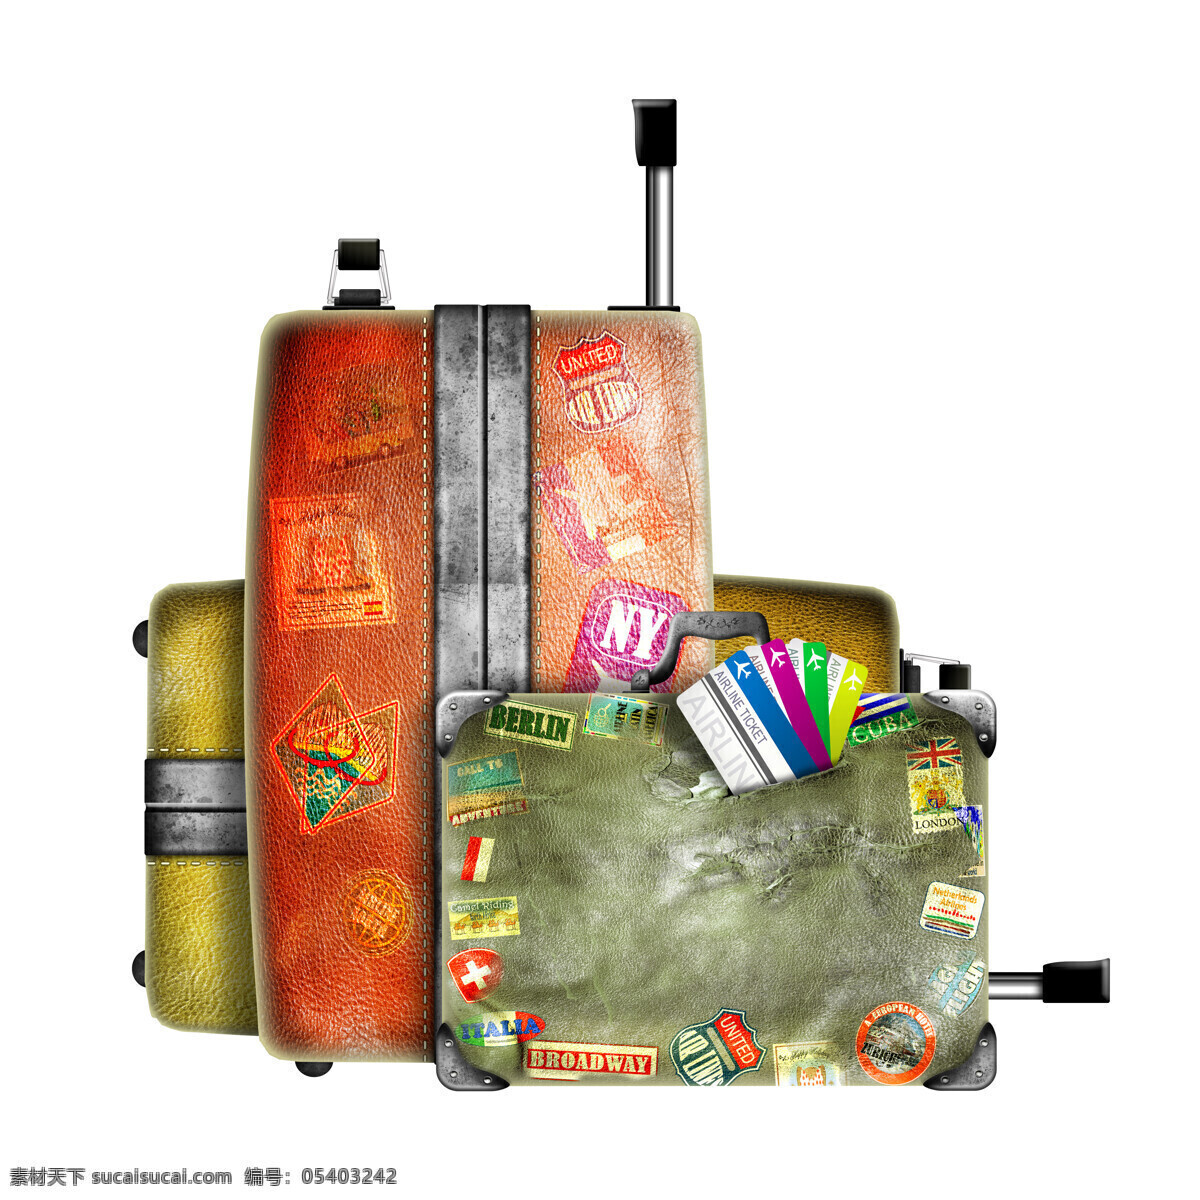 行李箱 飞机票 旅行箱 旅游素材 皮箱 箱子 其他类别 生活百科 白色